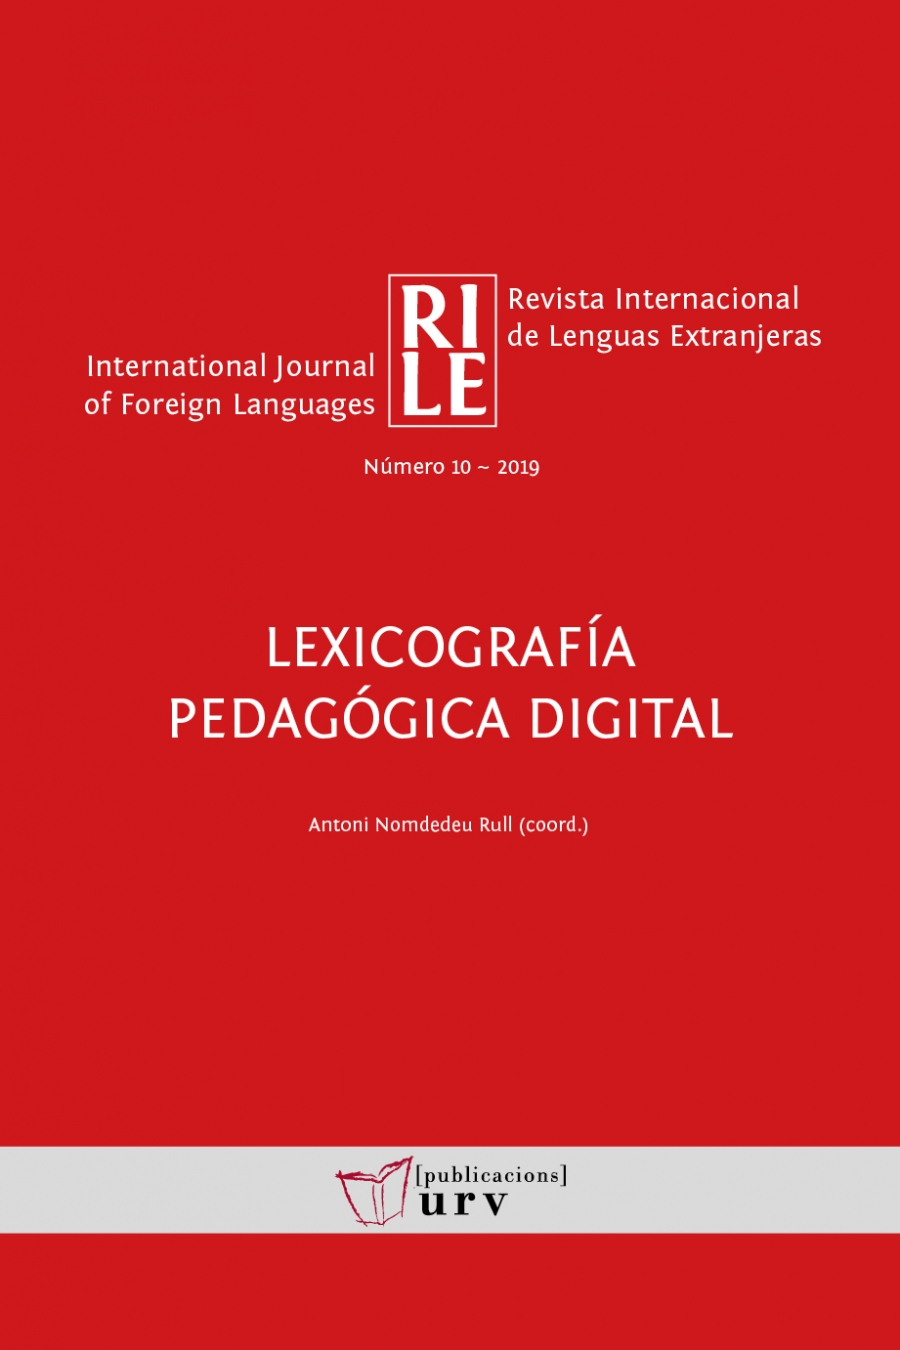 Imagen de portada del libro Lexicografía pedagógica digital